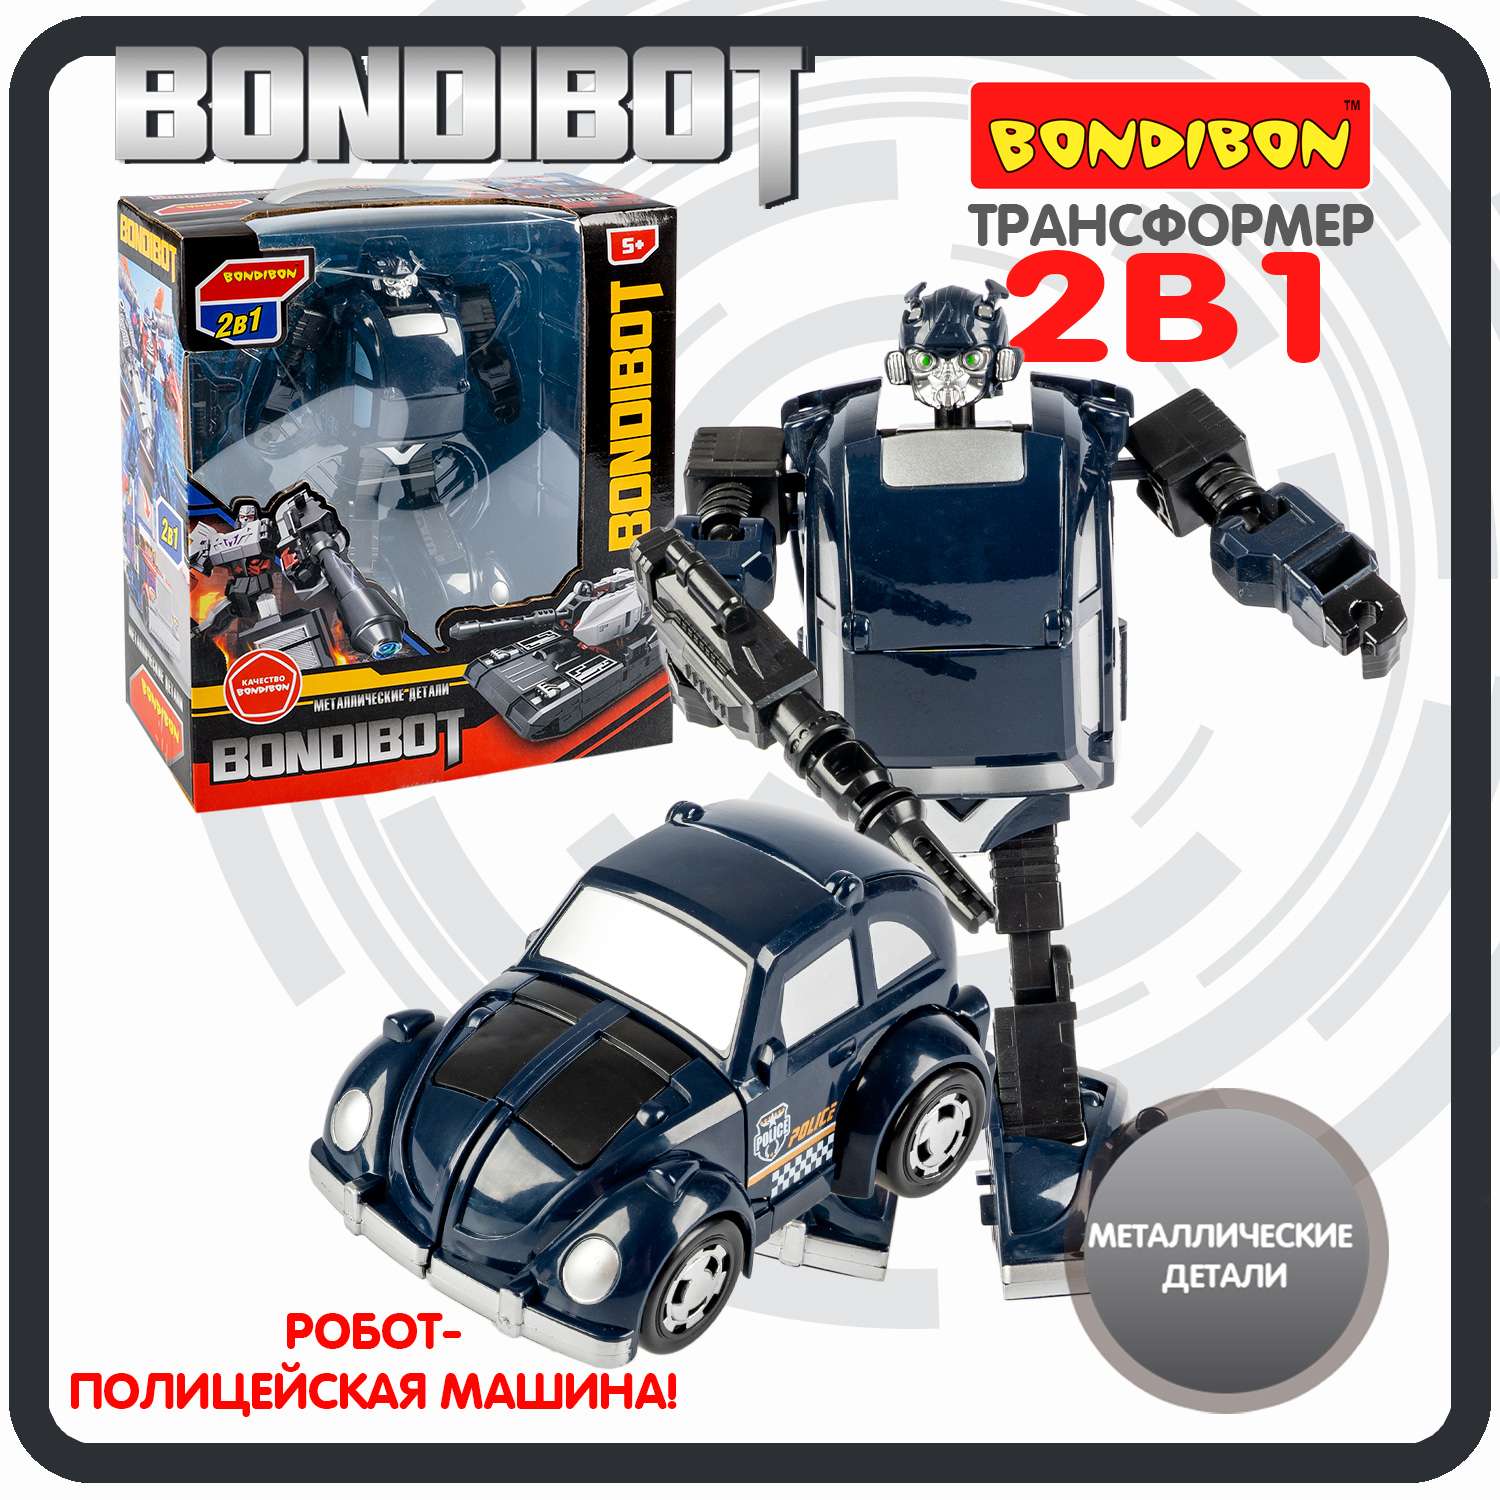 Трансформер BONDIBON BONDIBOT 2 в 1 робот-легковой автомобиль с металлическими деталями синего цвета - фото 1